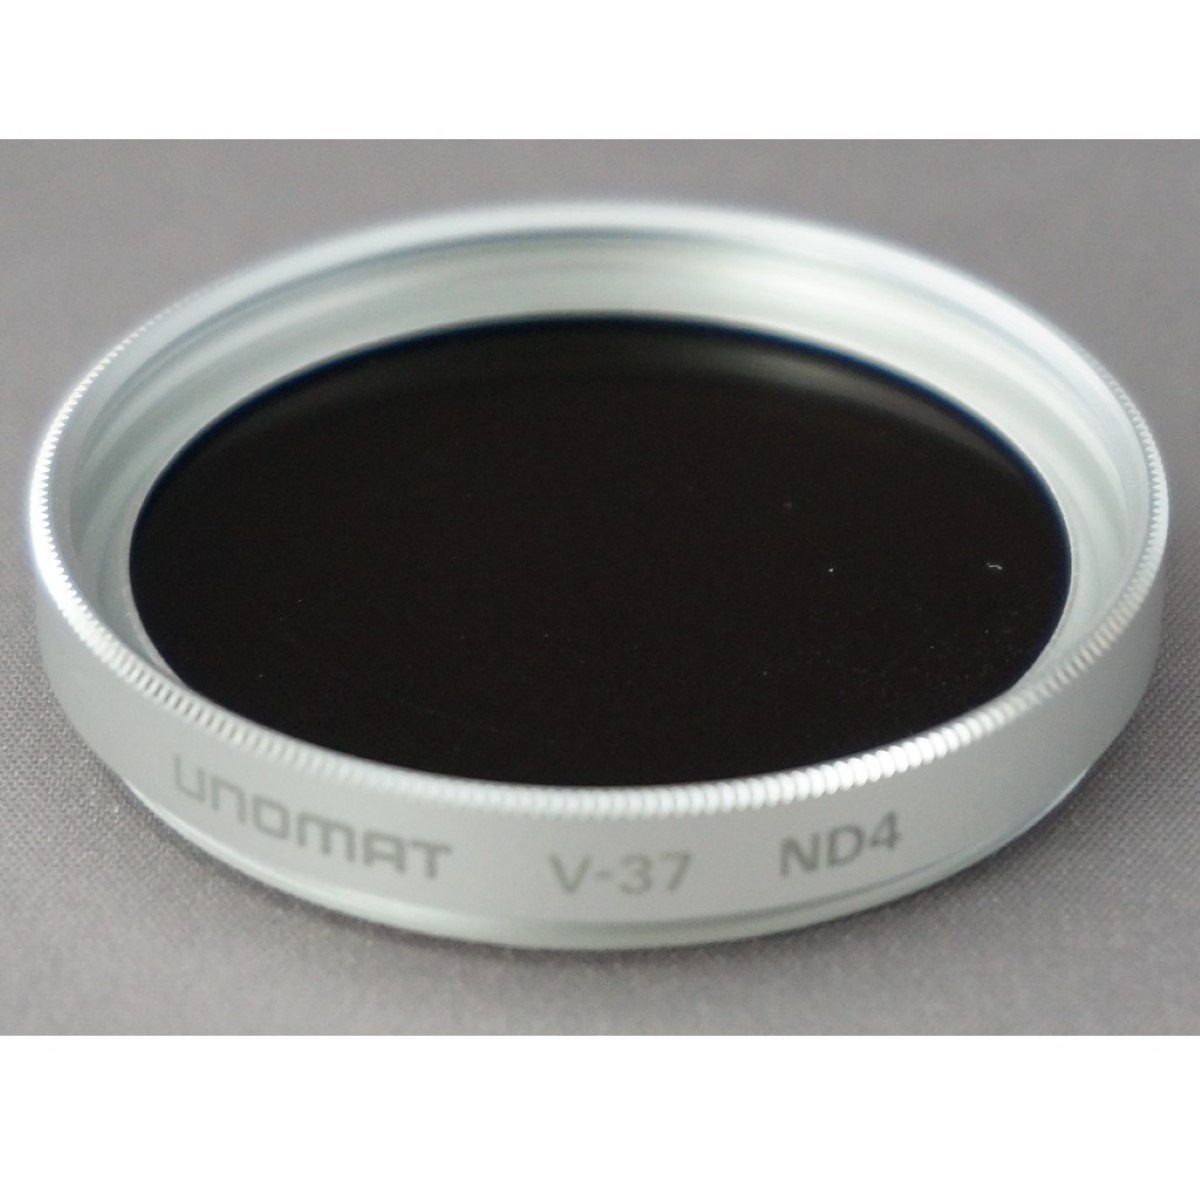 4x Objektivzubehör Kamera Grau-Filter (Graufilter für verhindert etc) 37mm Unomat ND4 2 Digital, Silber Überbelichtung, =